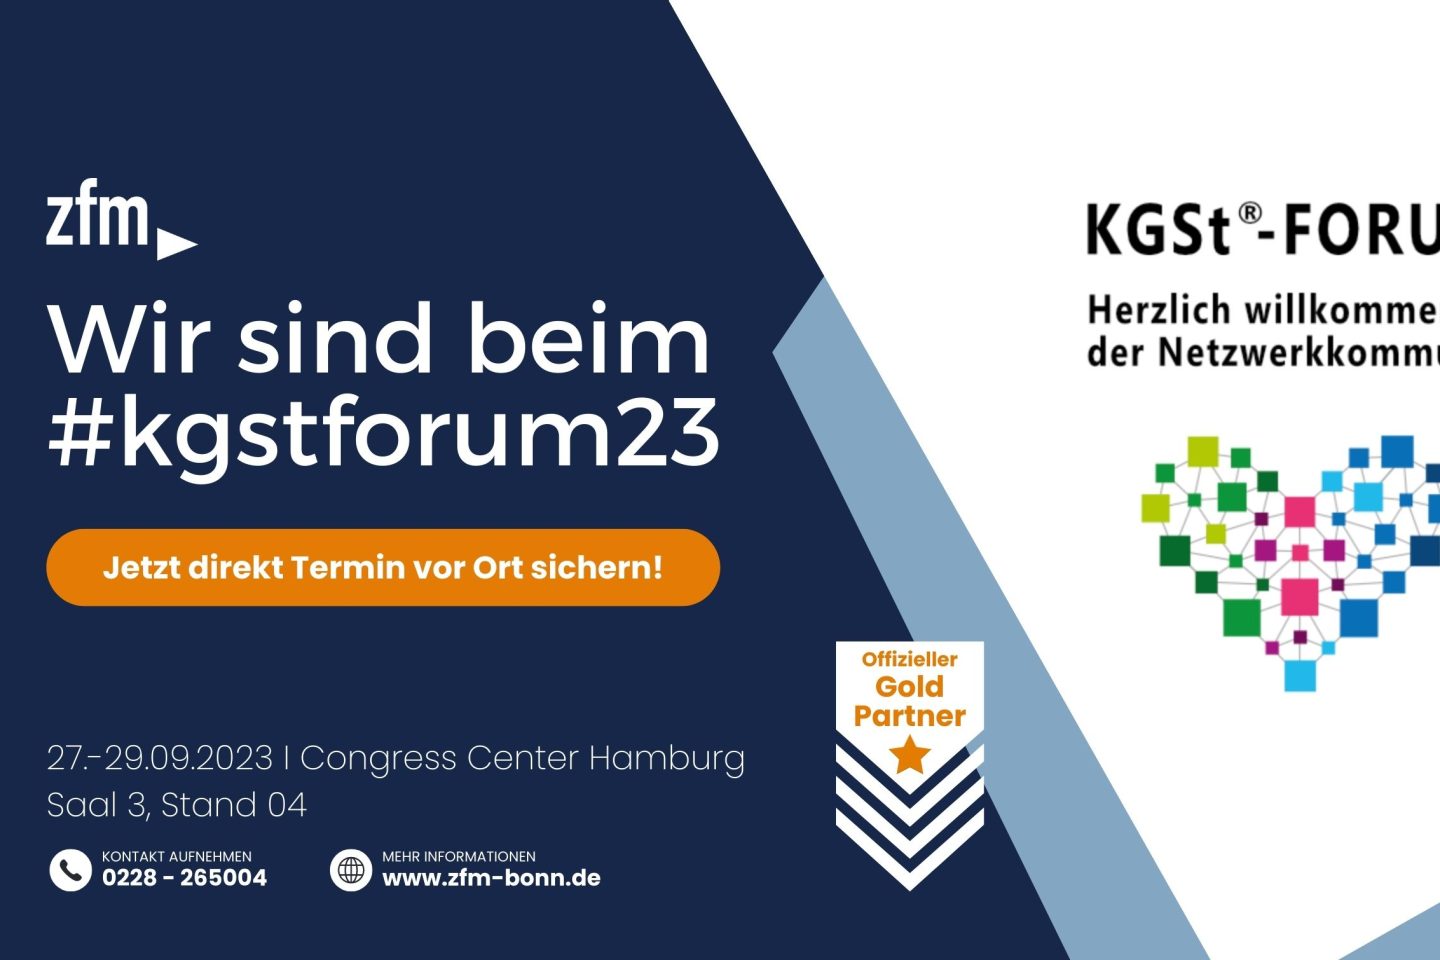 zfm ist Gold-Partner beim KGSt Forum 2023 in Hamburg